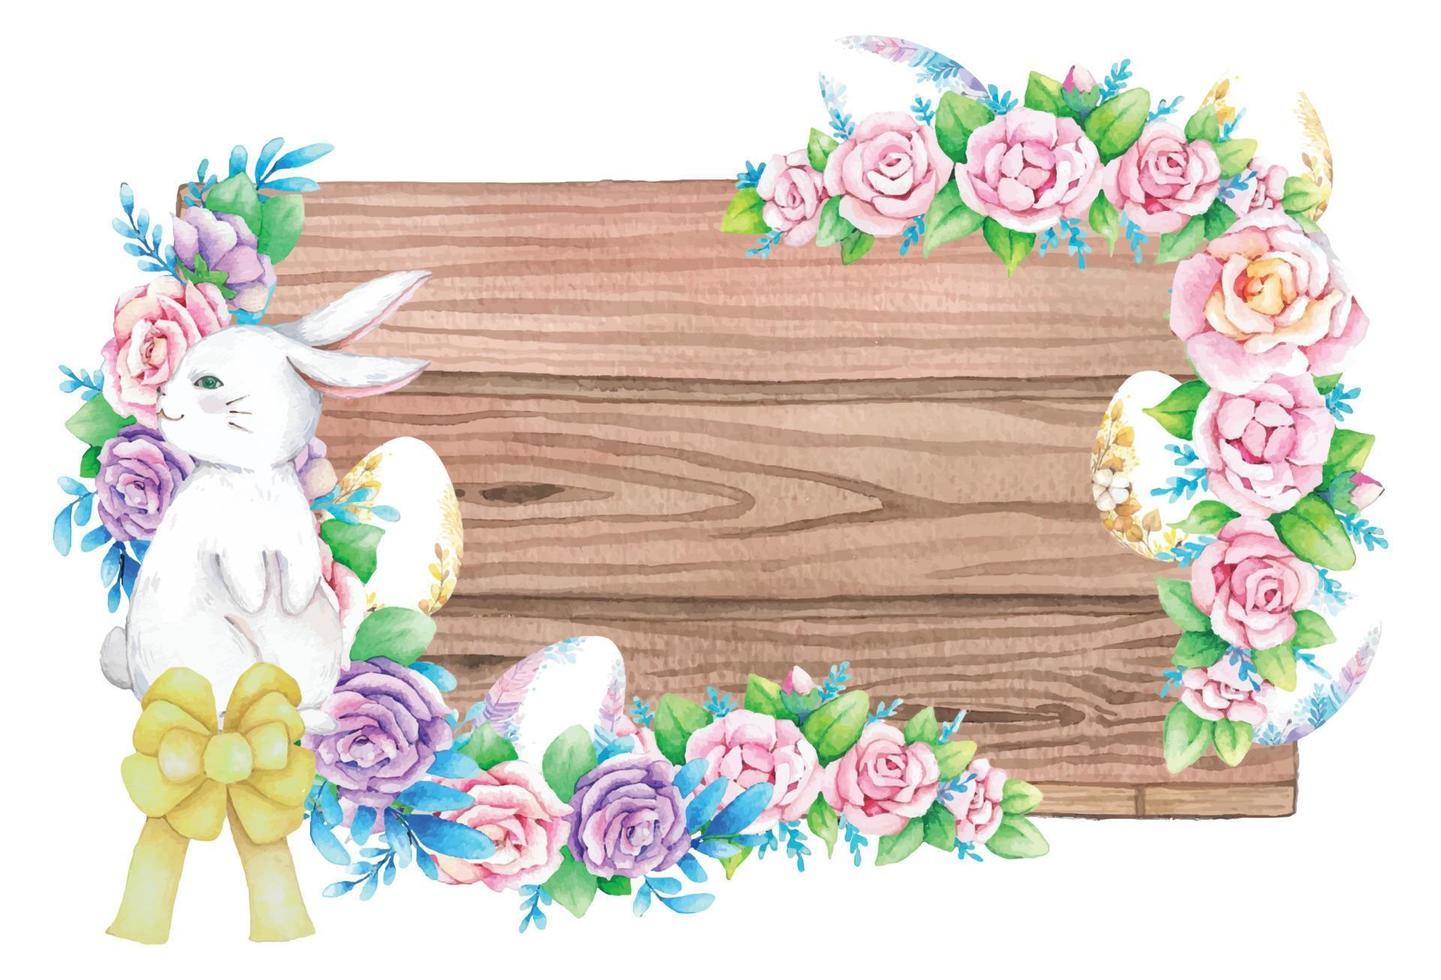 marco de madera acuarela con decoración de pascua de primavera. ilustración vectorial vector